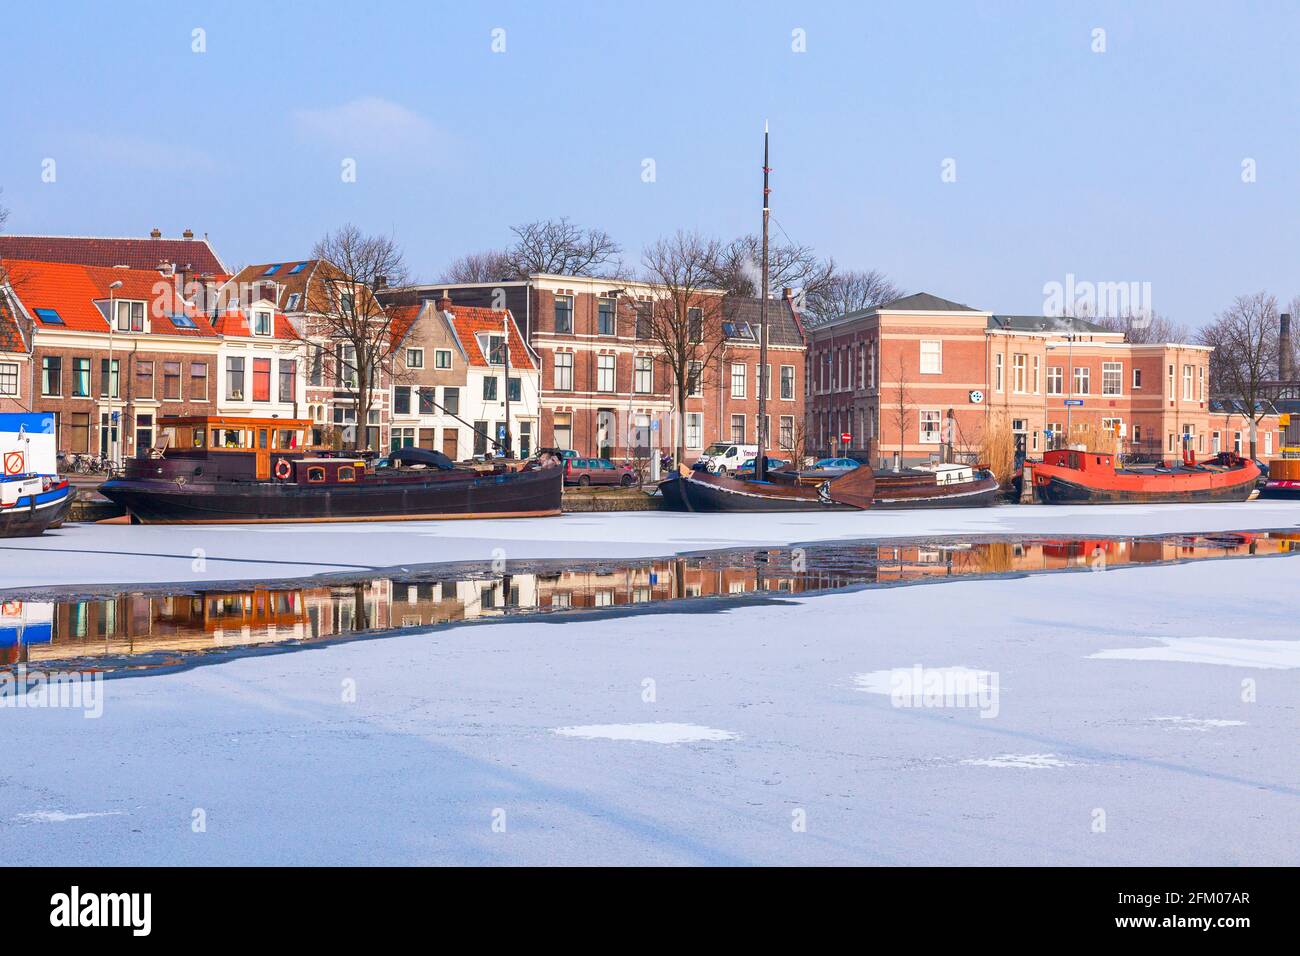 Case tradizionali e barche ormeggiate nel canale ghiacciato del fiume Spaarne, Haarlem, Amsterdam, Olanda del Nord, Paesi Bassi Foto Stock